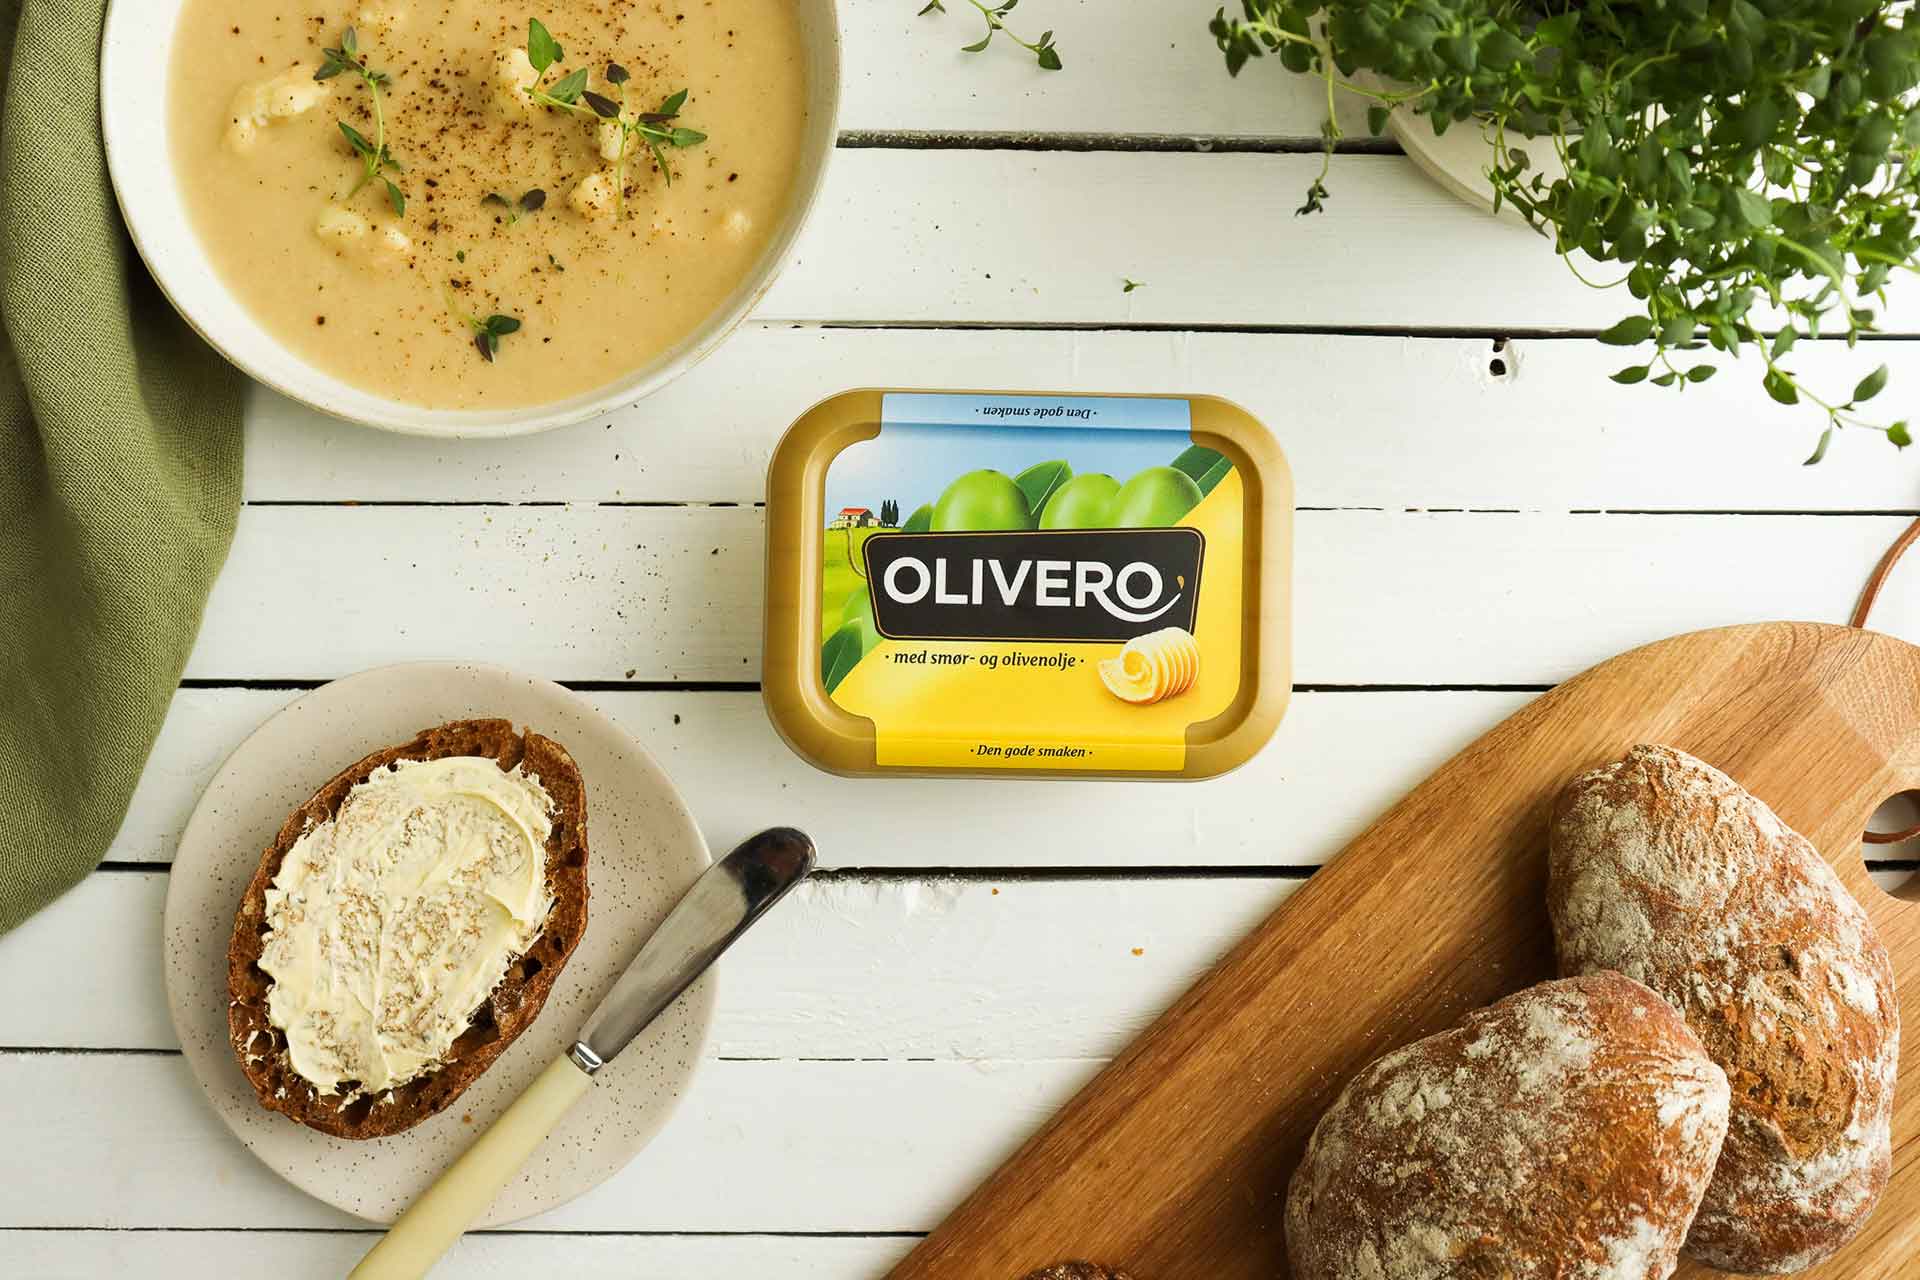 olivero på bord med brød og suppe